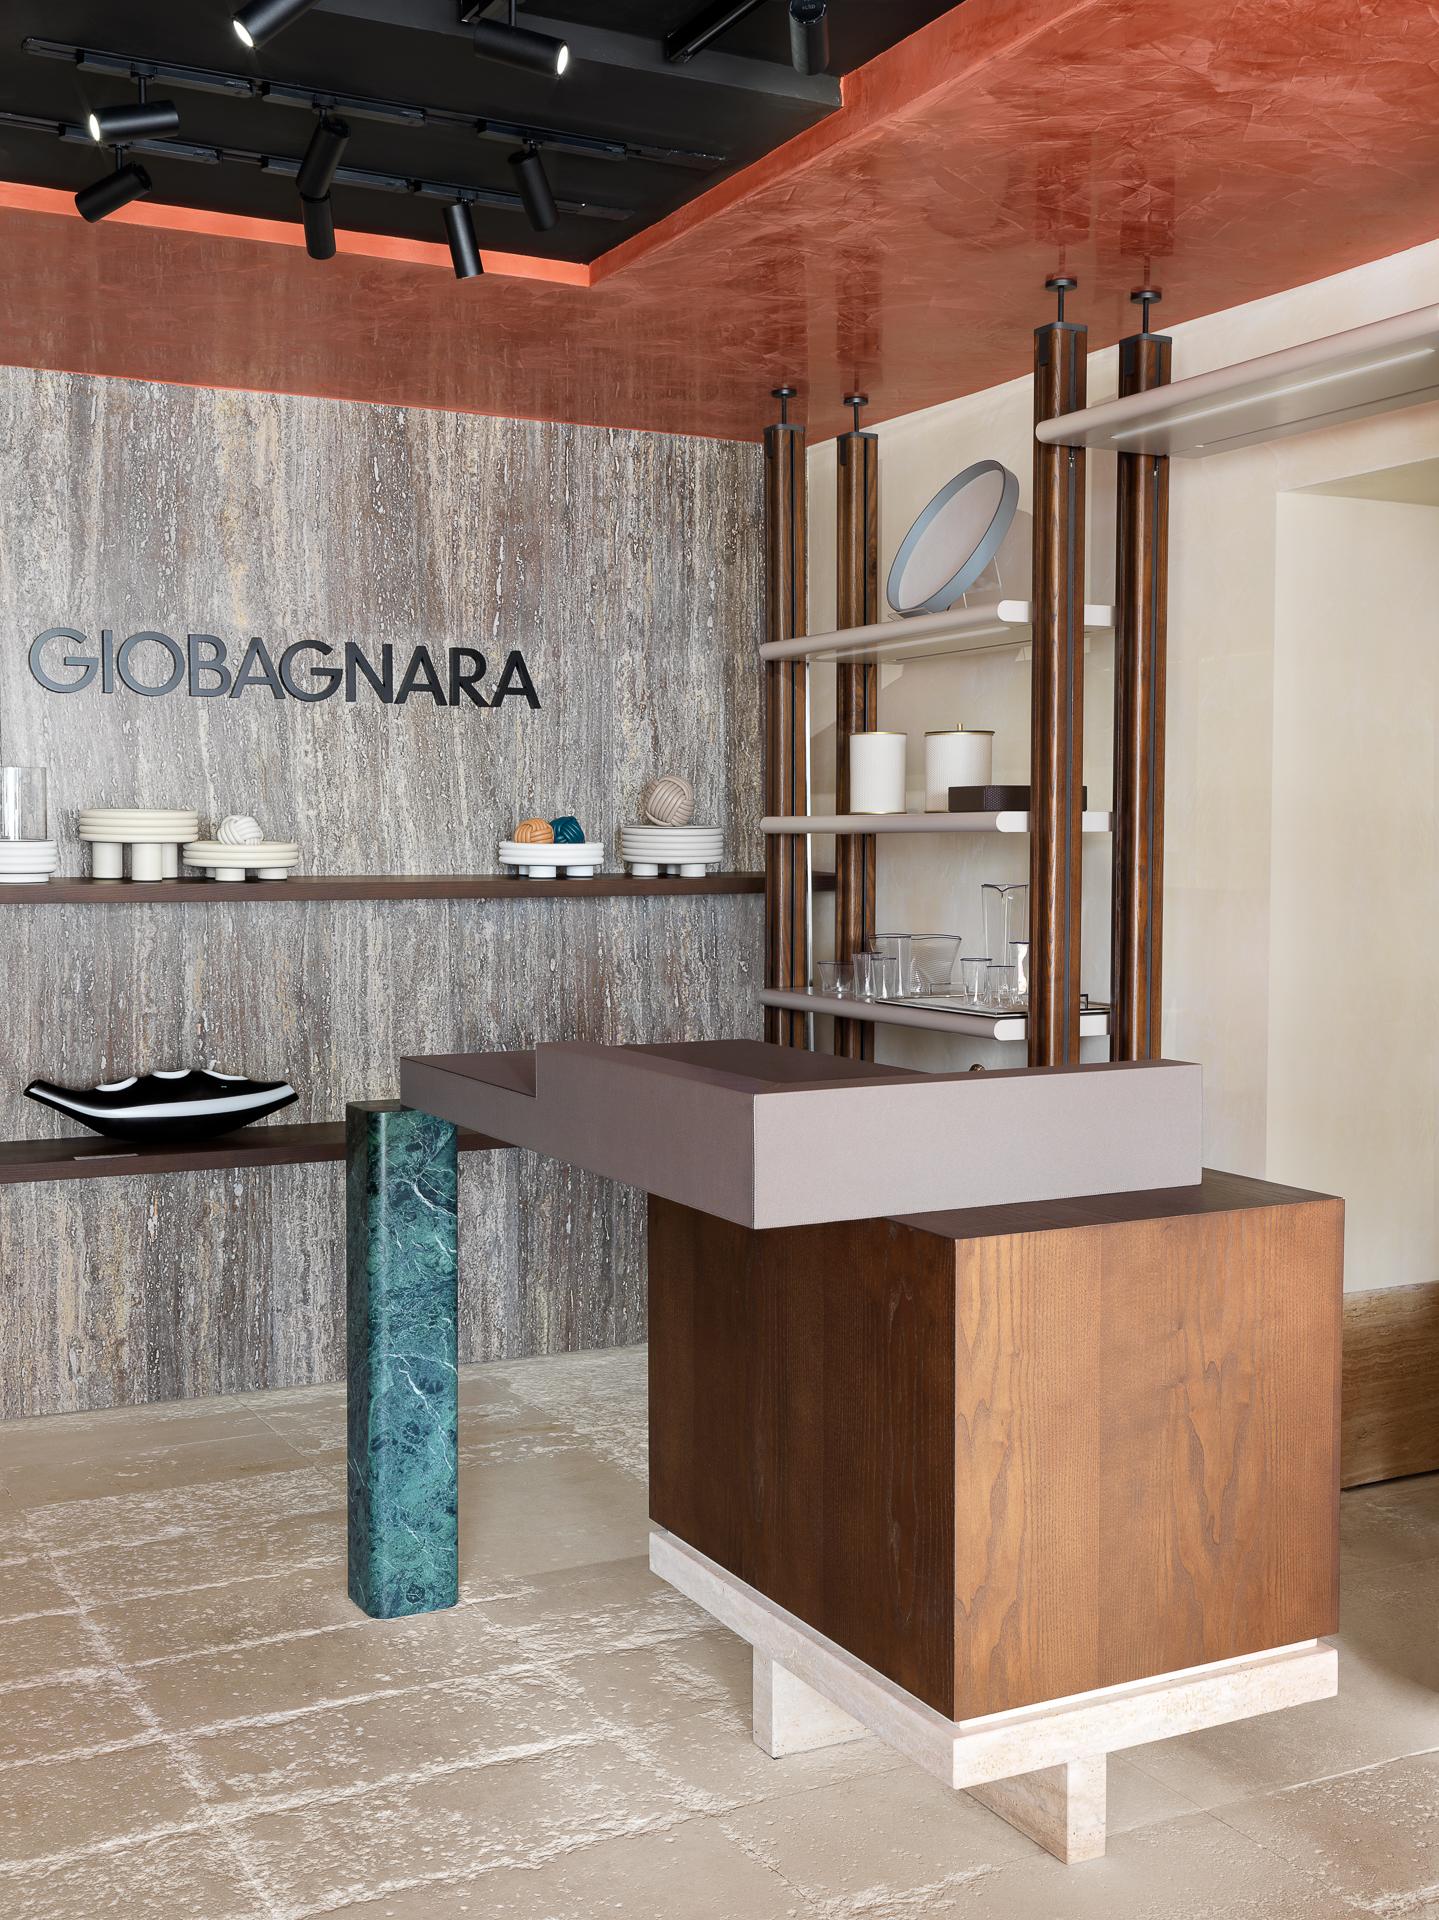 GIOBAGNARA
Berühmt für seine eleganten Kreationen, die Luxus vermitteln
GIOBAGNARA hält sich an den Grundsatz, ohne zu übertreiben
höchste Standards der Handwerkskunst. Durch die Verfolgung
eine Philosophie, die traditionelles Wissen einbezieht
wie